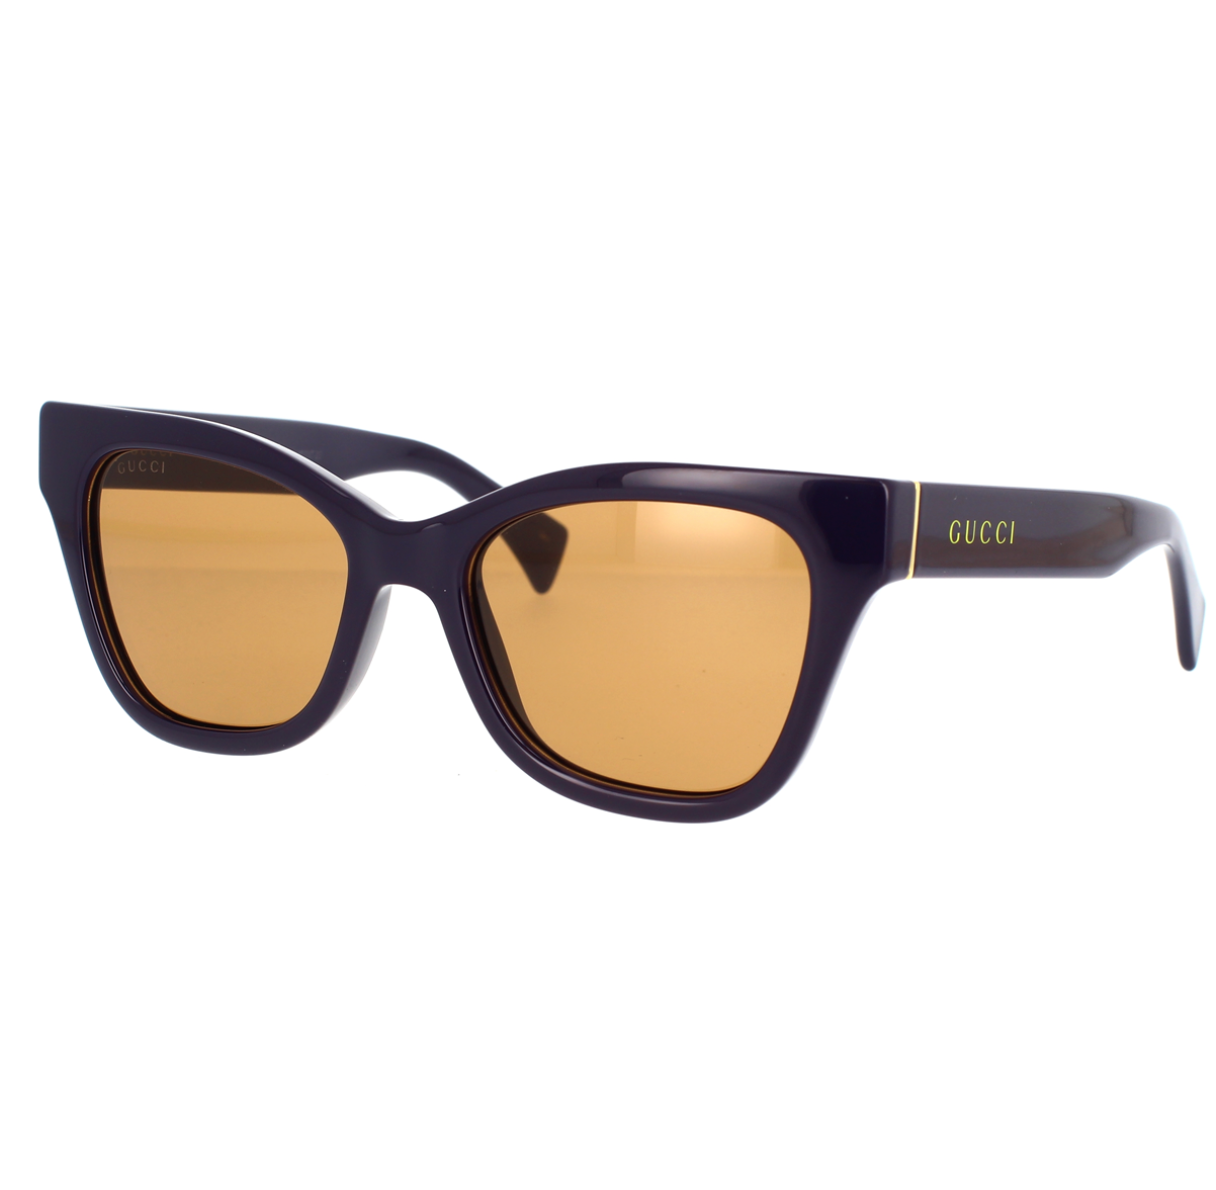 Gucci GG1133S-002 52mm New Sunglasses